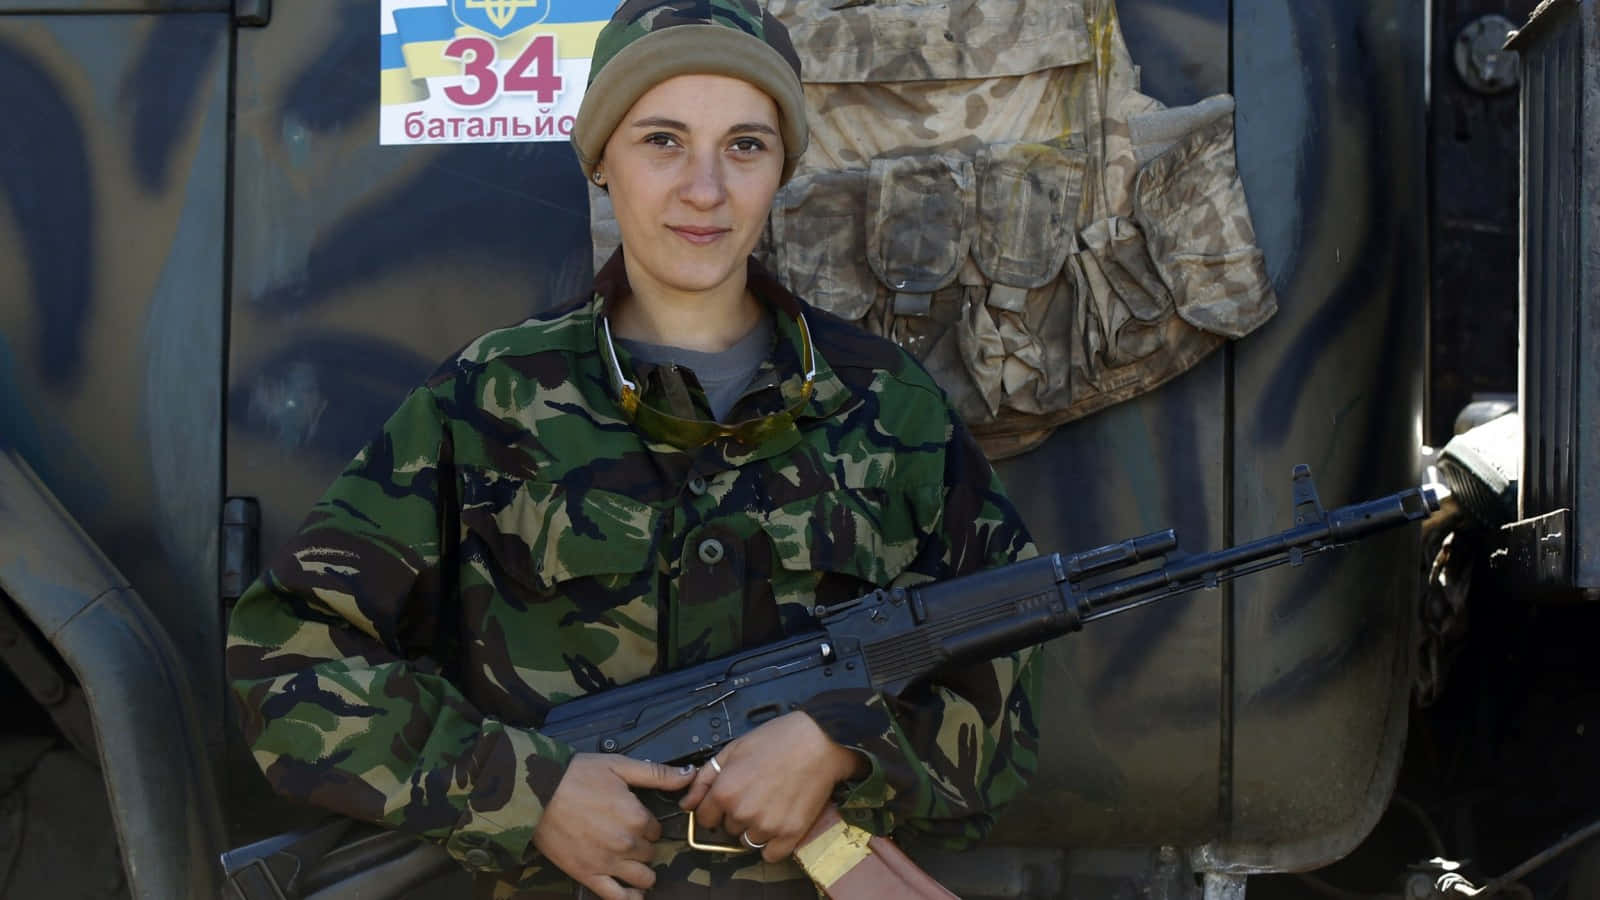 Enkvinna I Militär Uniform Hållande En Ak47.